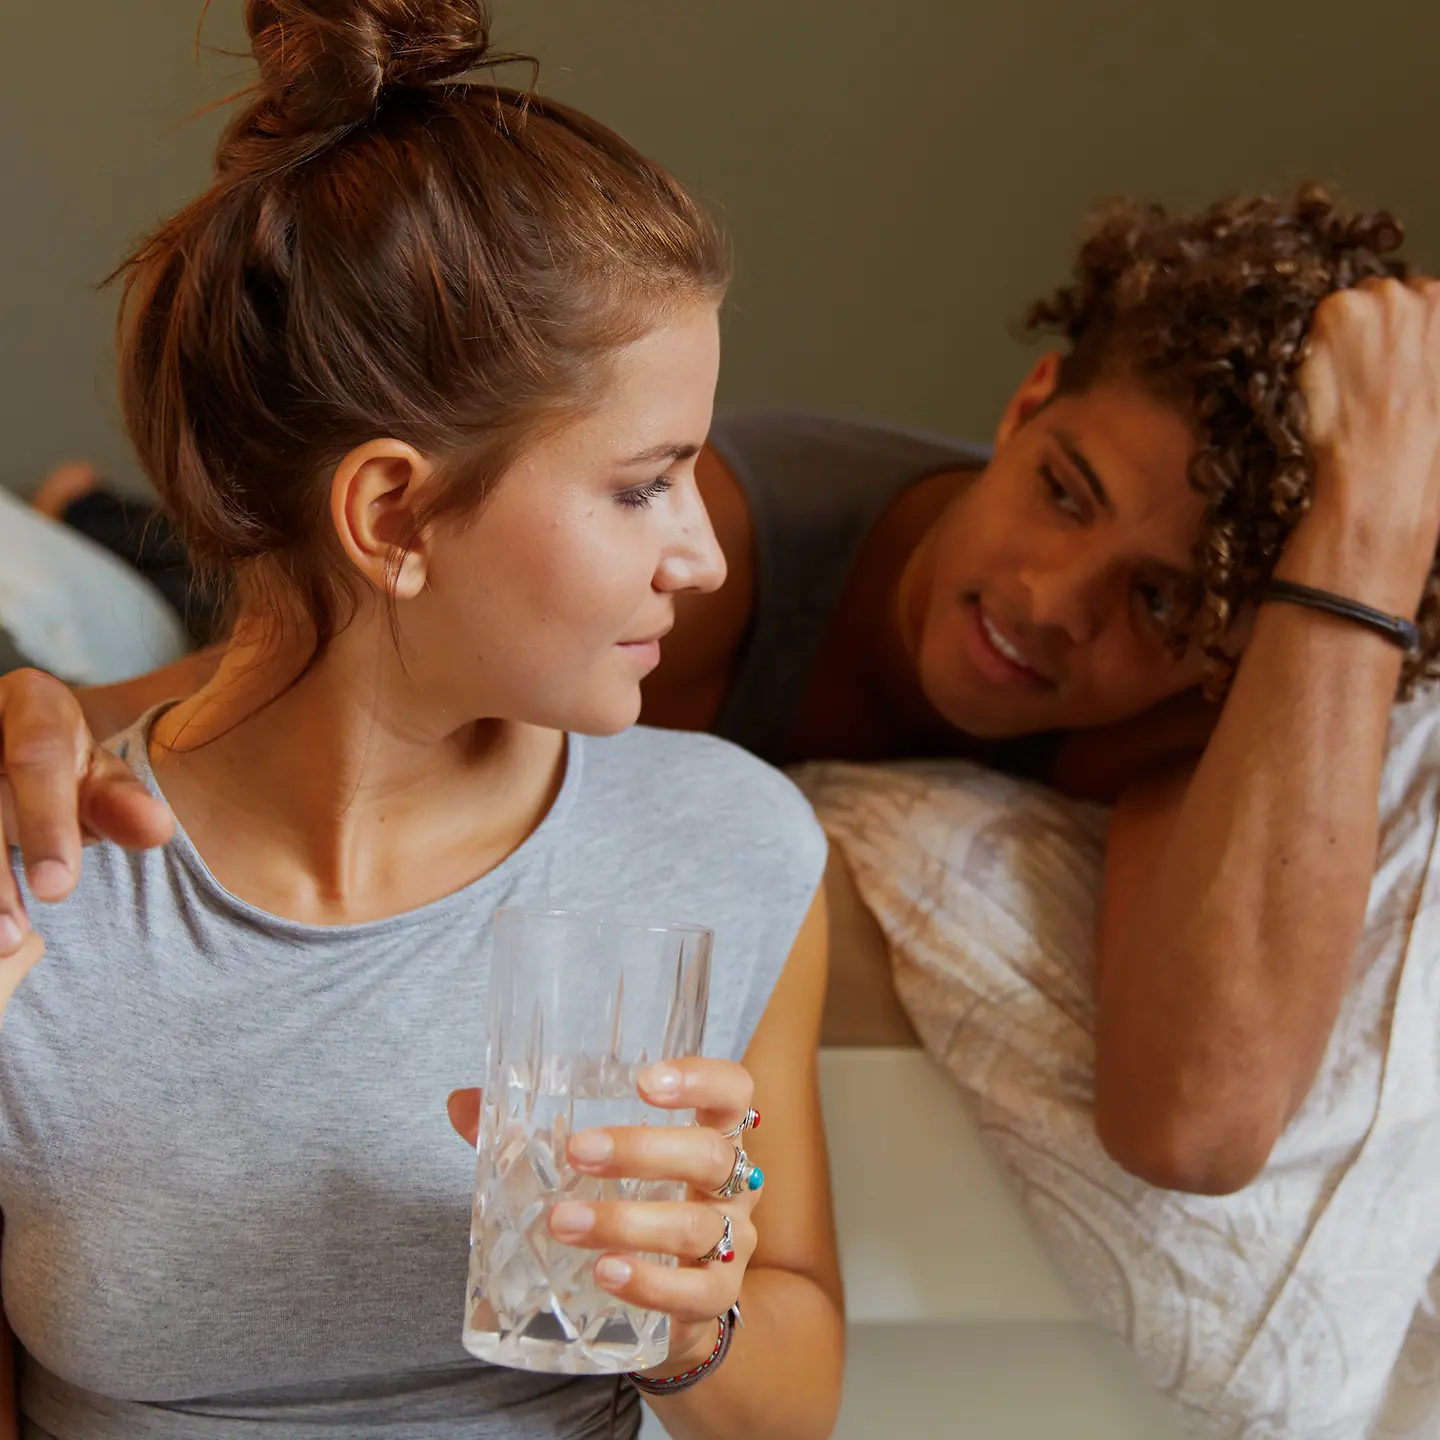 Eine junge Frau trinkt ein Glas Wasser am Bett und ein junger Mann hat den Arm um sie gelegt